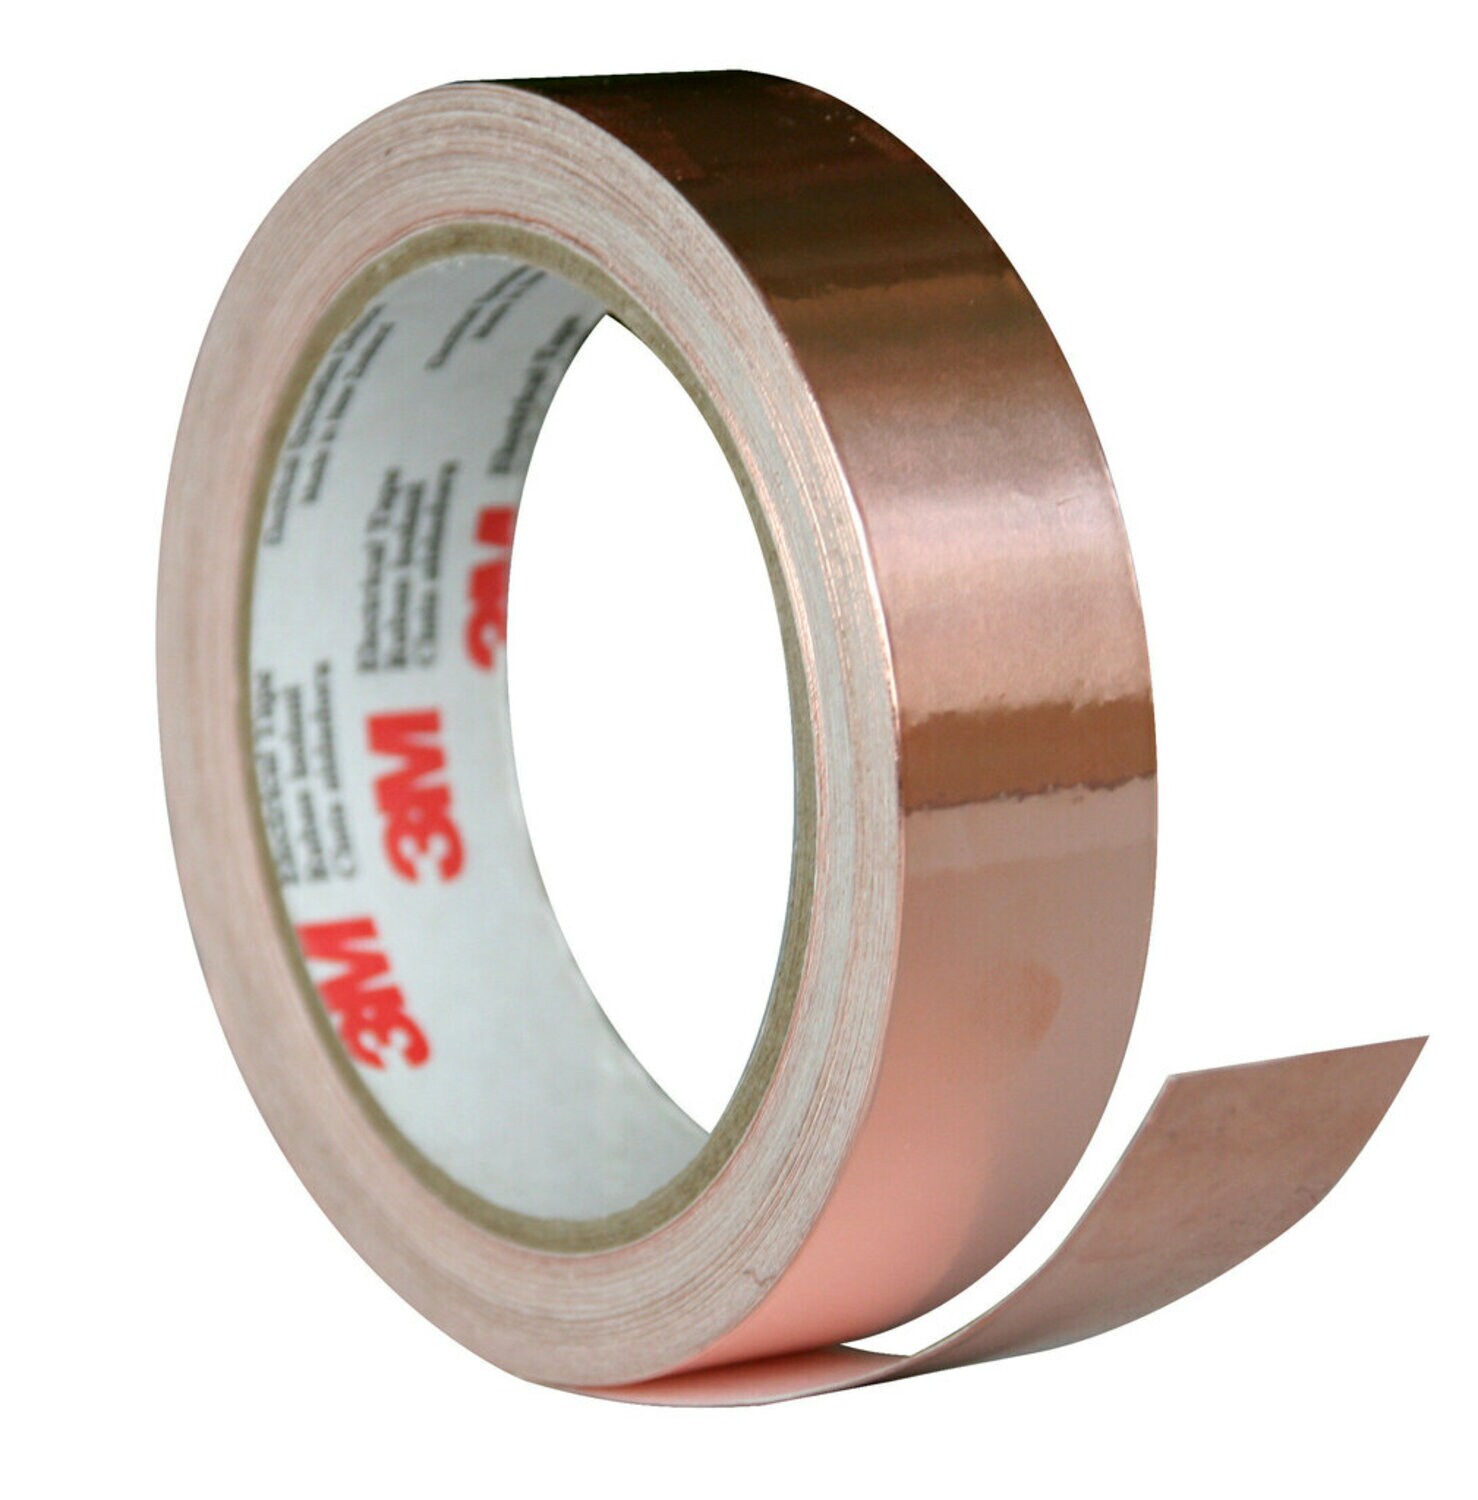 7010398770 - 3M Copper Foil EMI Shielding Tape 1181, 3 in x 18 yd, 4 Rolls/Case